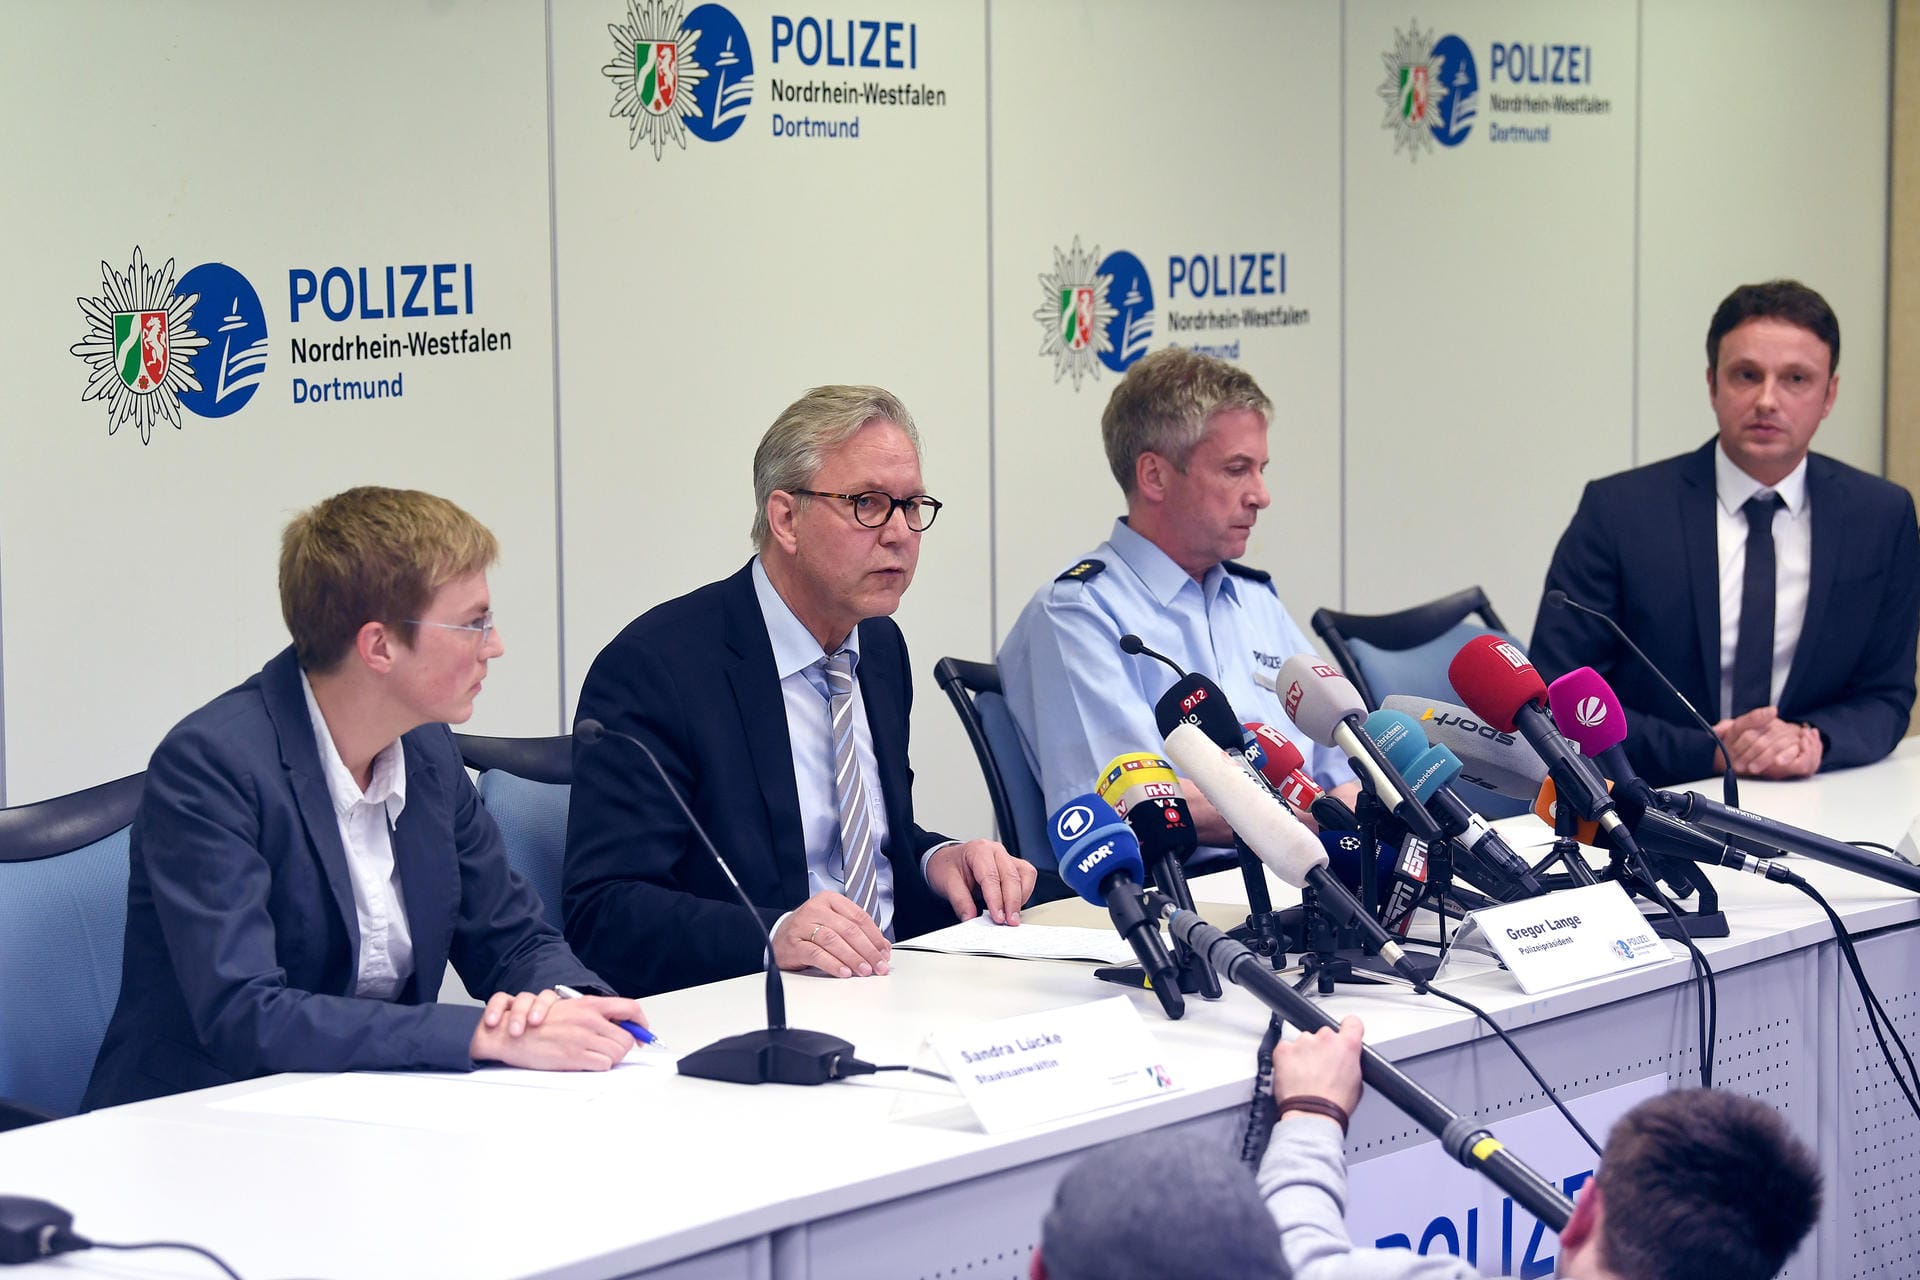 Kurz vor Mitternacht gibt der Dortmunder Polizeipräsident Gregor Lange ein Statement ab. Gerüchte über ein Bekennerschreiben machen die Runde. Dies wollte Lange aber noch nicht bestätigen. Mehr Informationen soll es am Mittwoch geben...